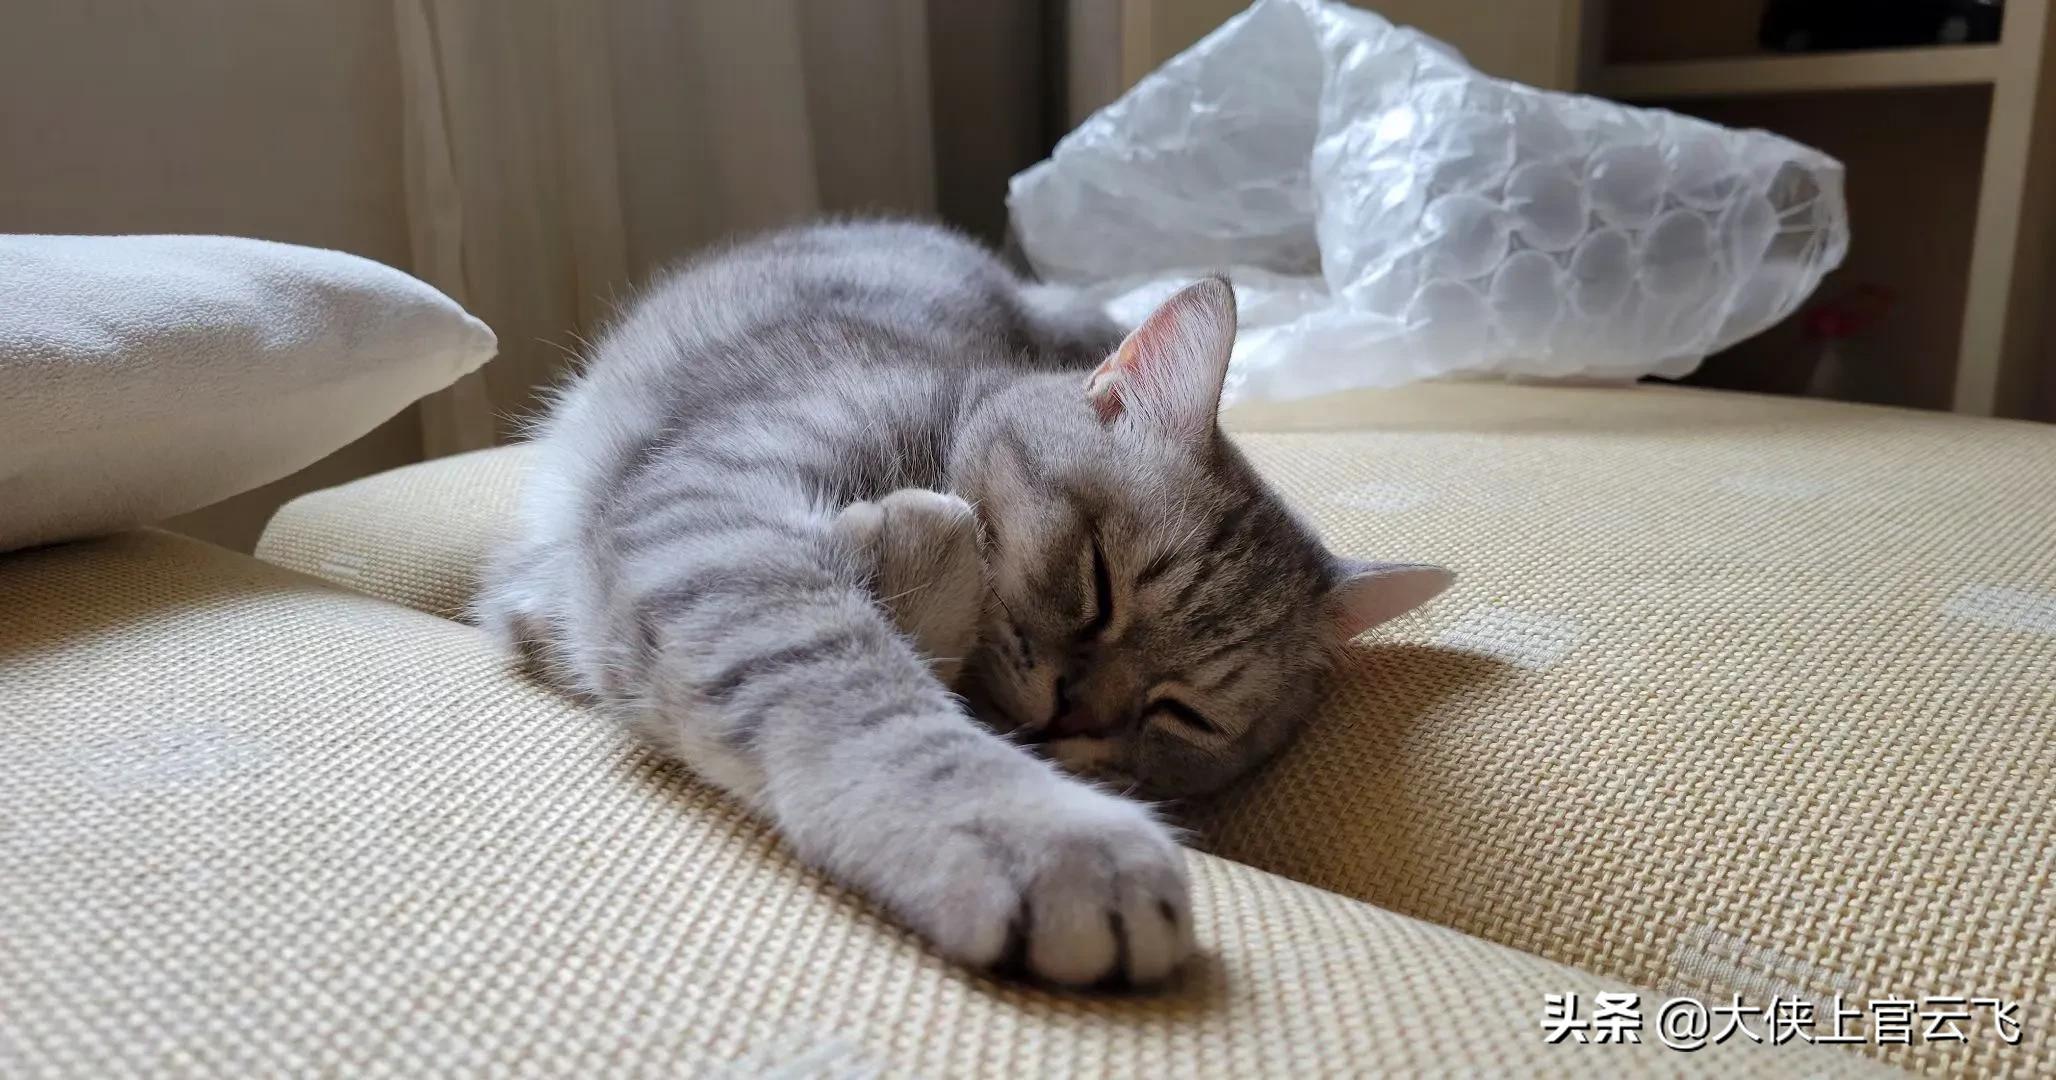 猫咪在天凉的时候容易嗜睡